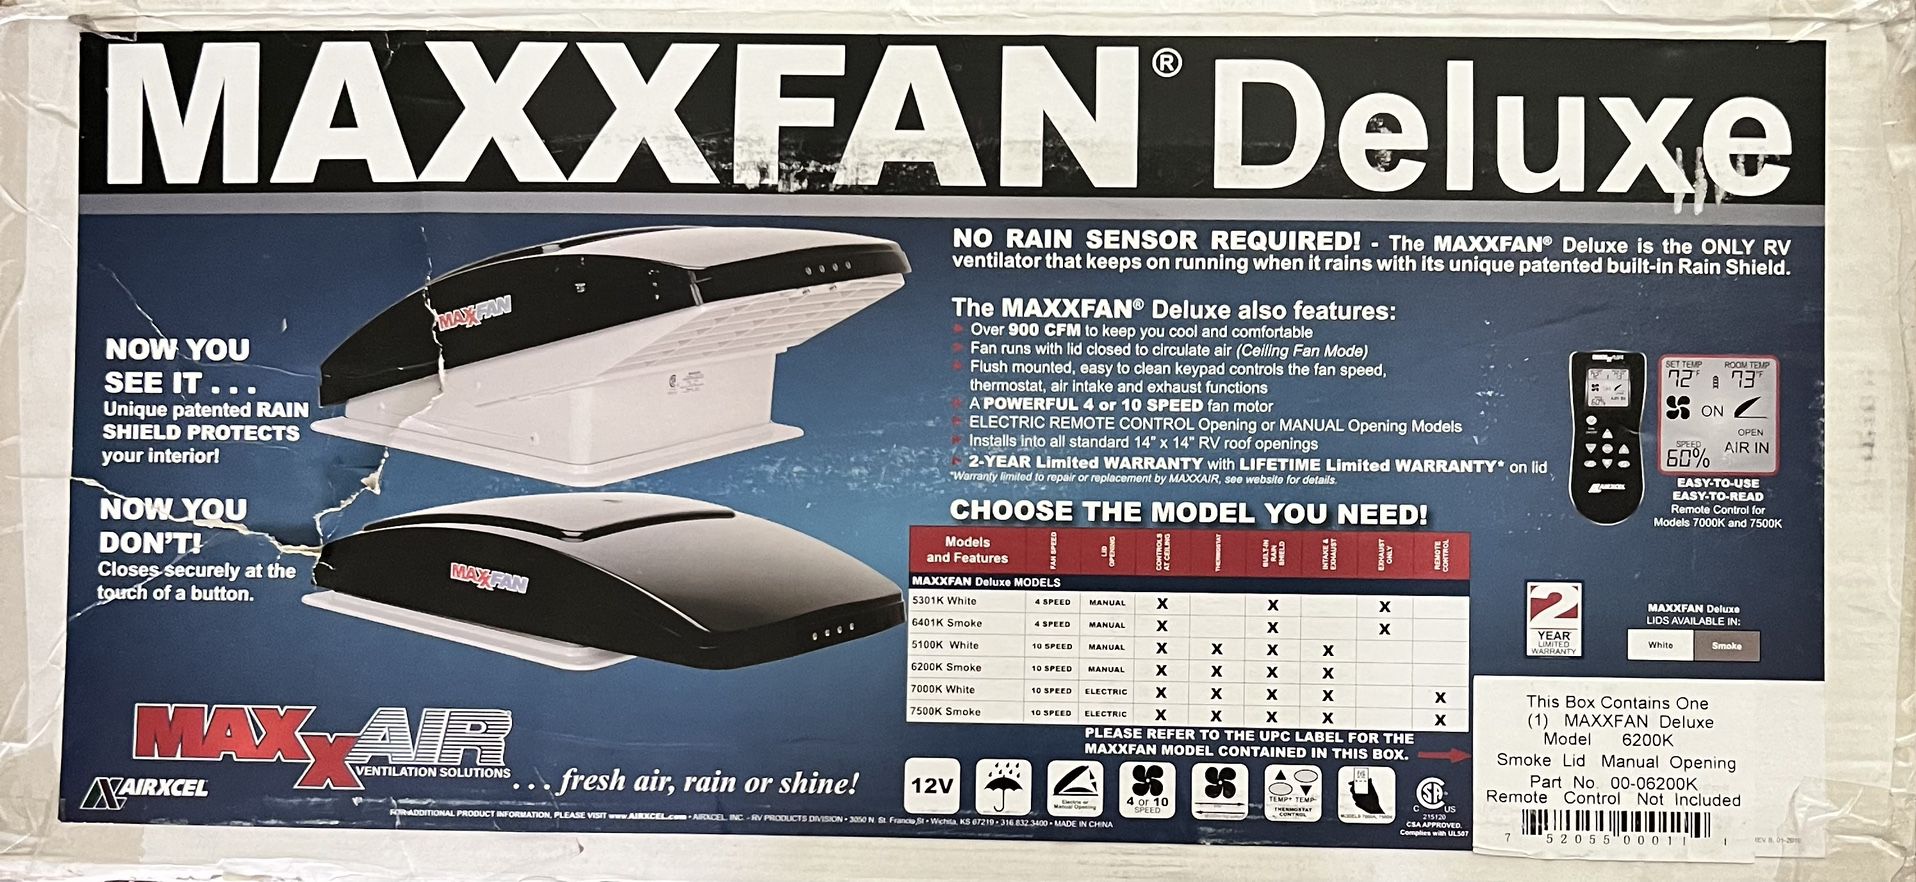 New MaxxFan deluxe